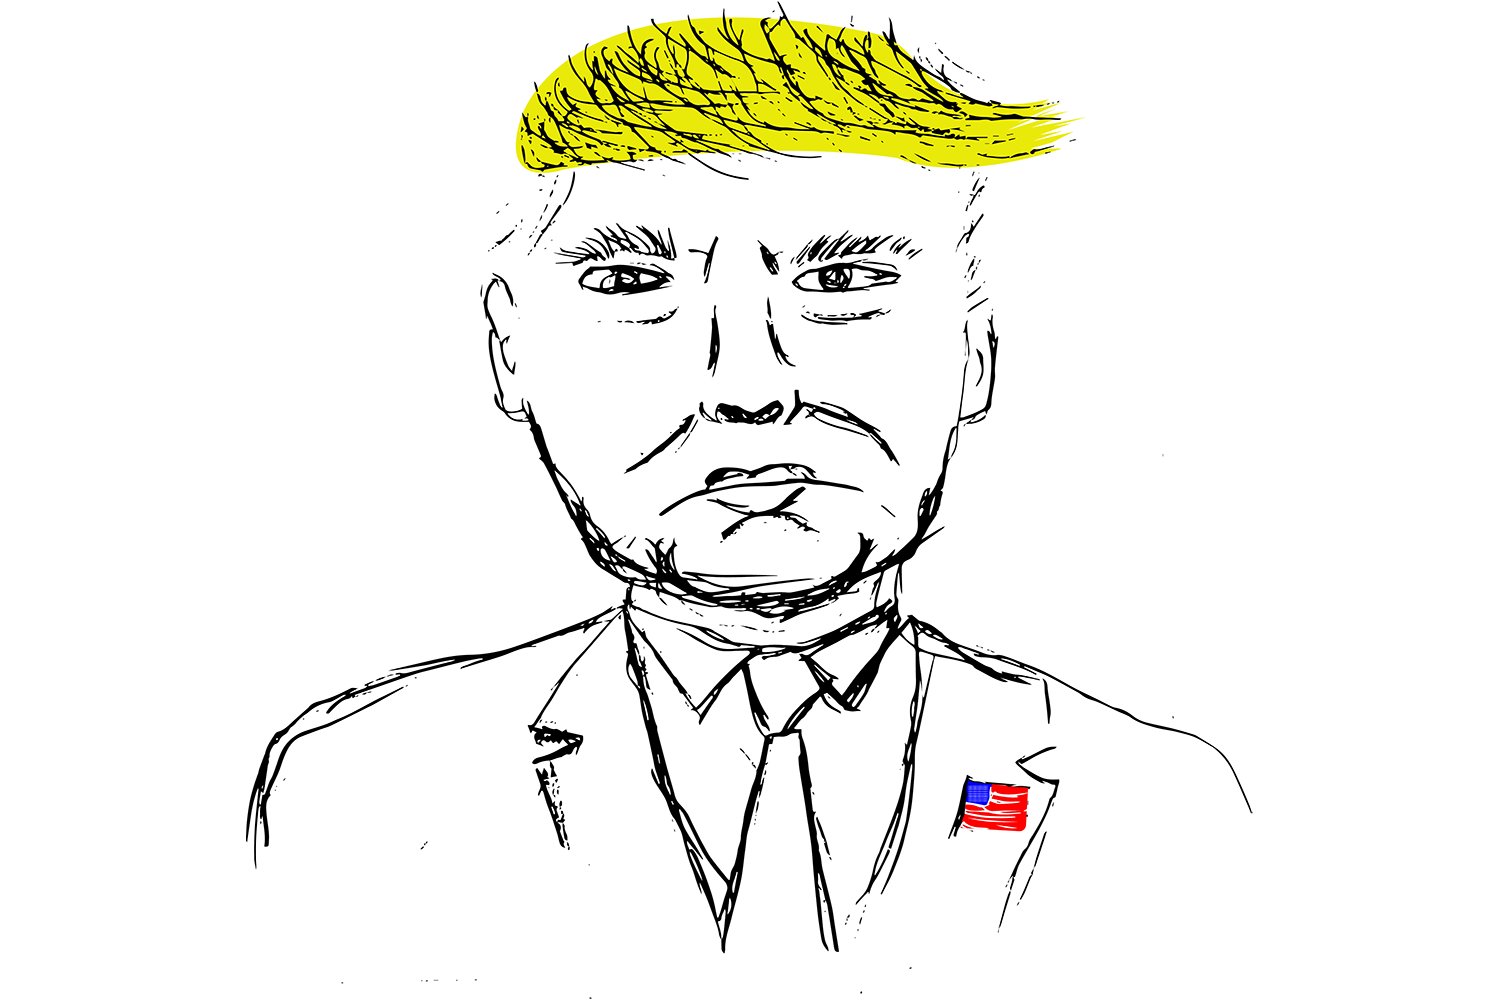 Gezeichnet von Nicola Hasler, es zeigt ein Bild von Donald Trump